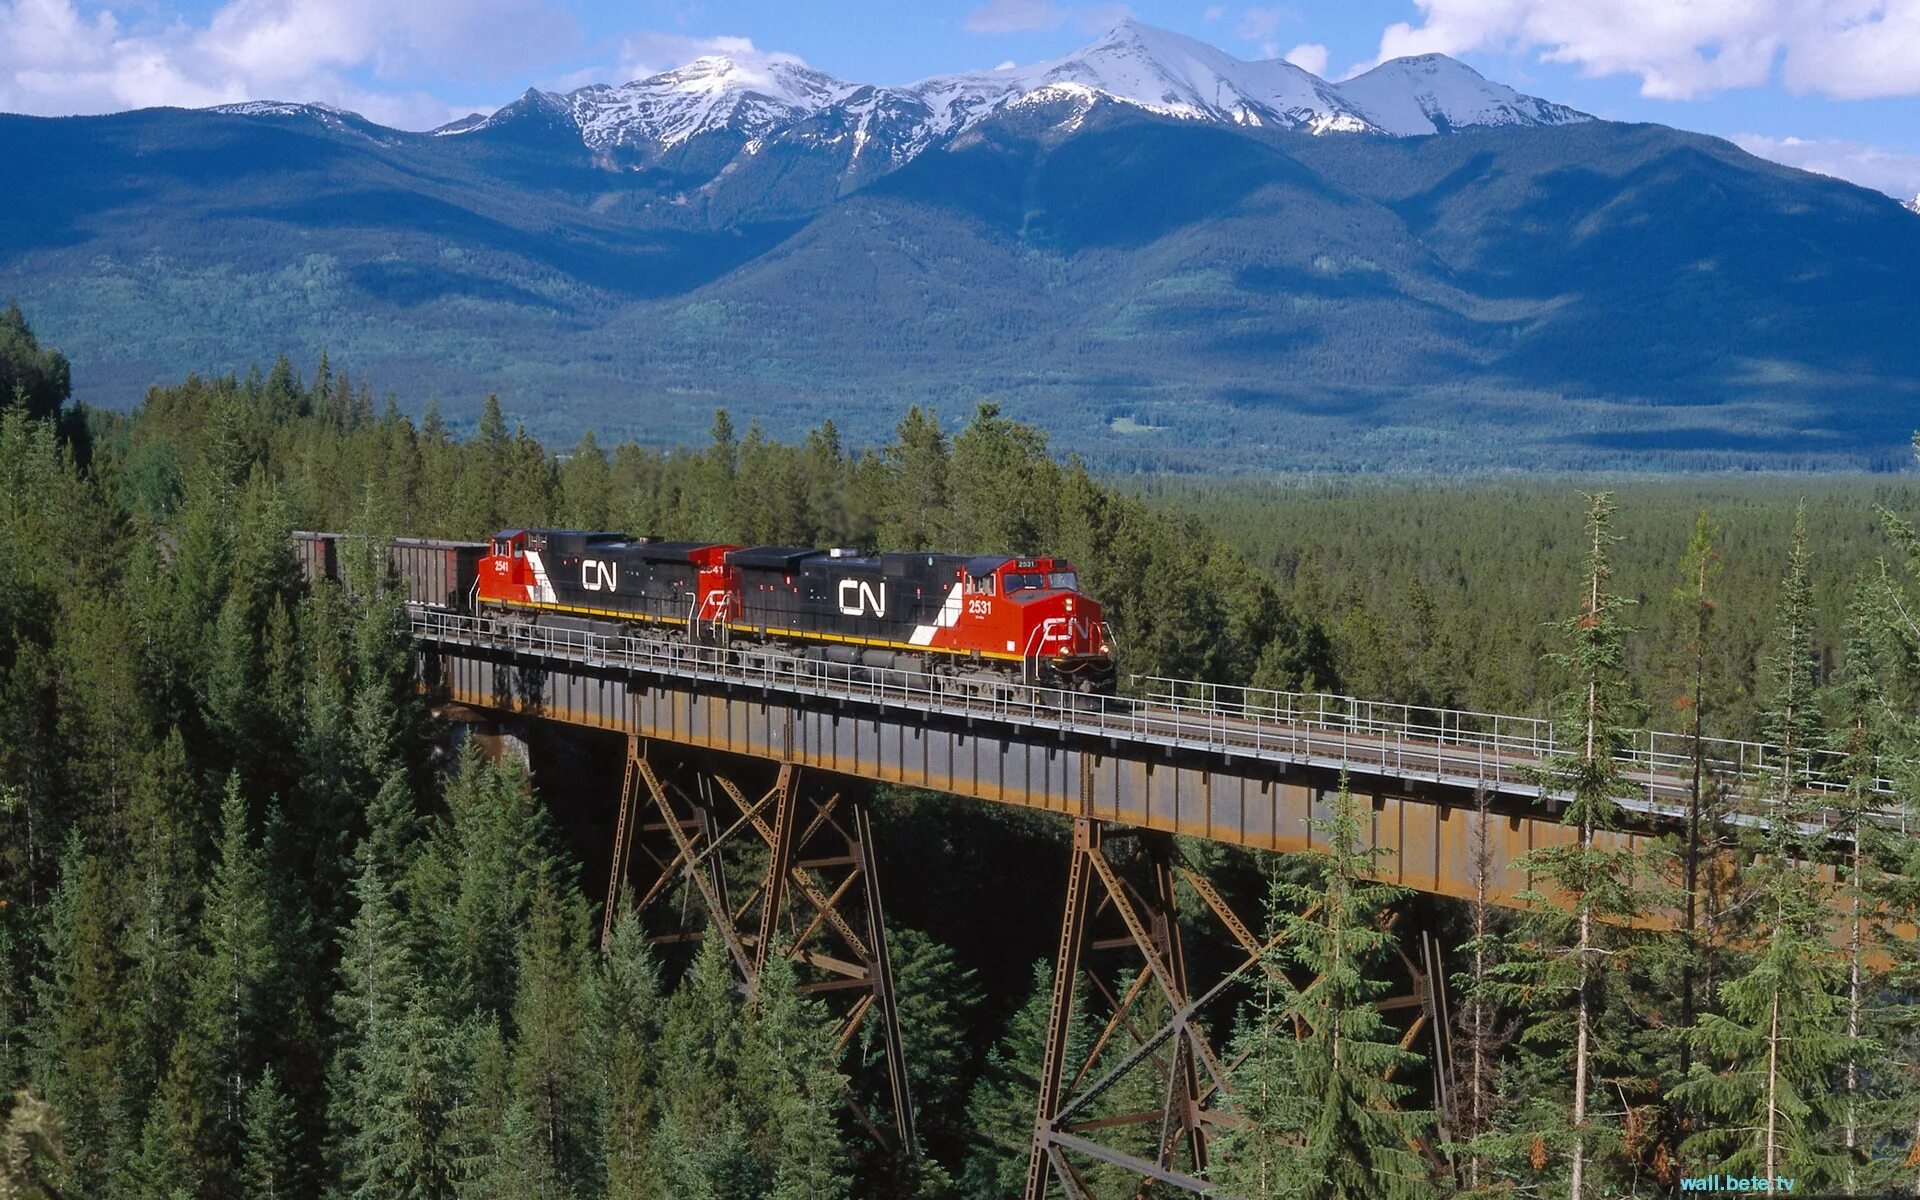 Монтана штат железная дорога. Кольцевая железная дорога Джорджтауна. Канадская Тихоокеанская железная дорога. Поезд в тайге.